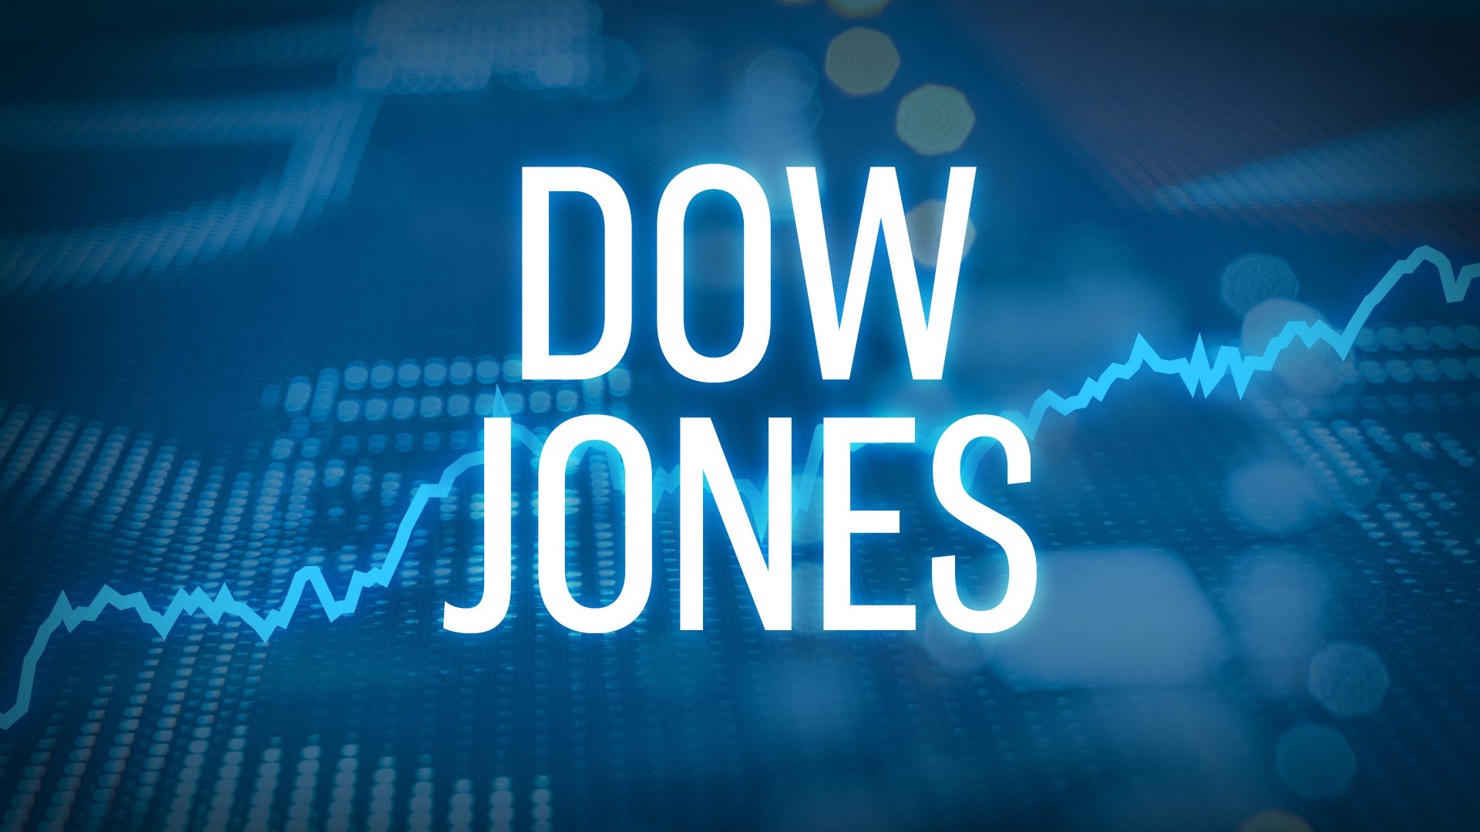 Dow Jones hồi phục 300 điểm sau phiên giảm sâu, nhóm ngân hàng bứt phá.